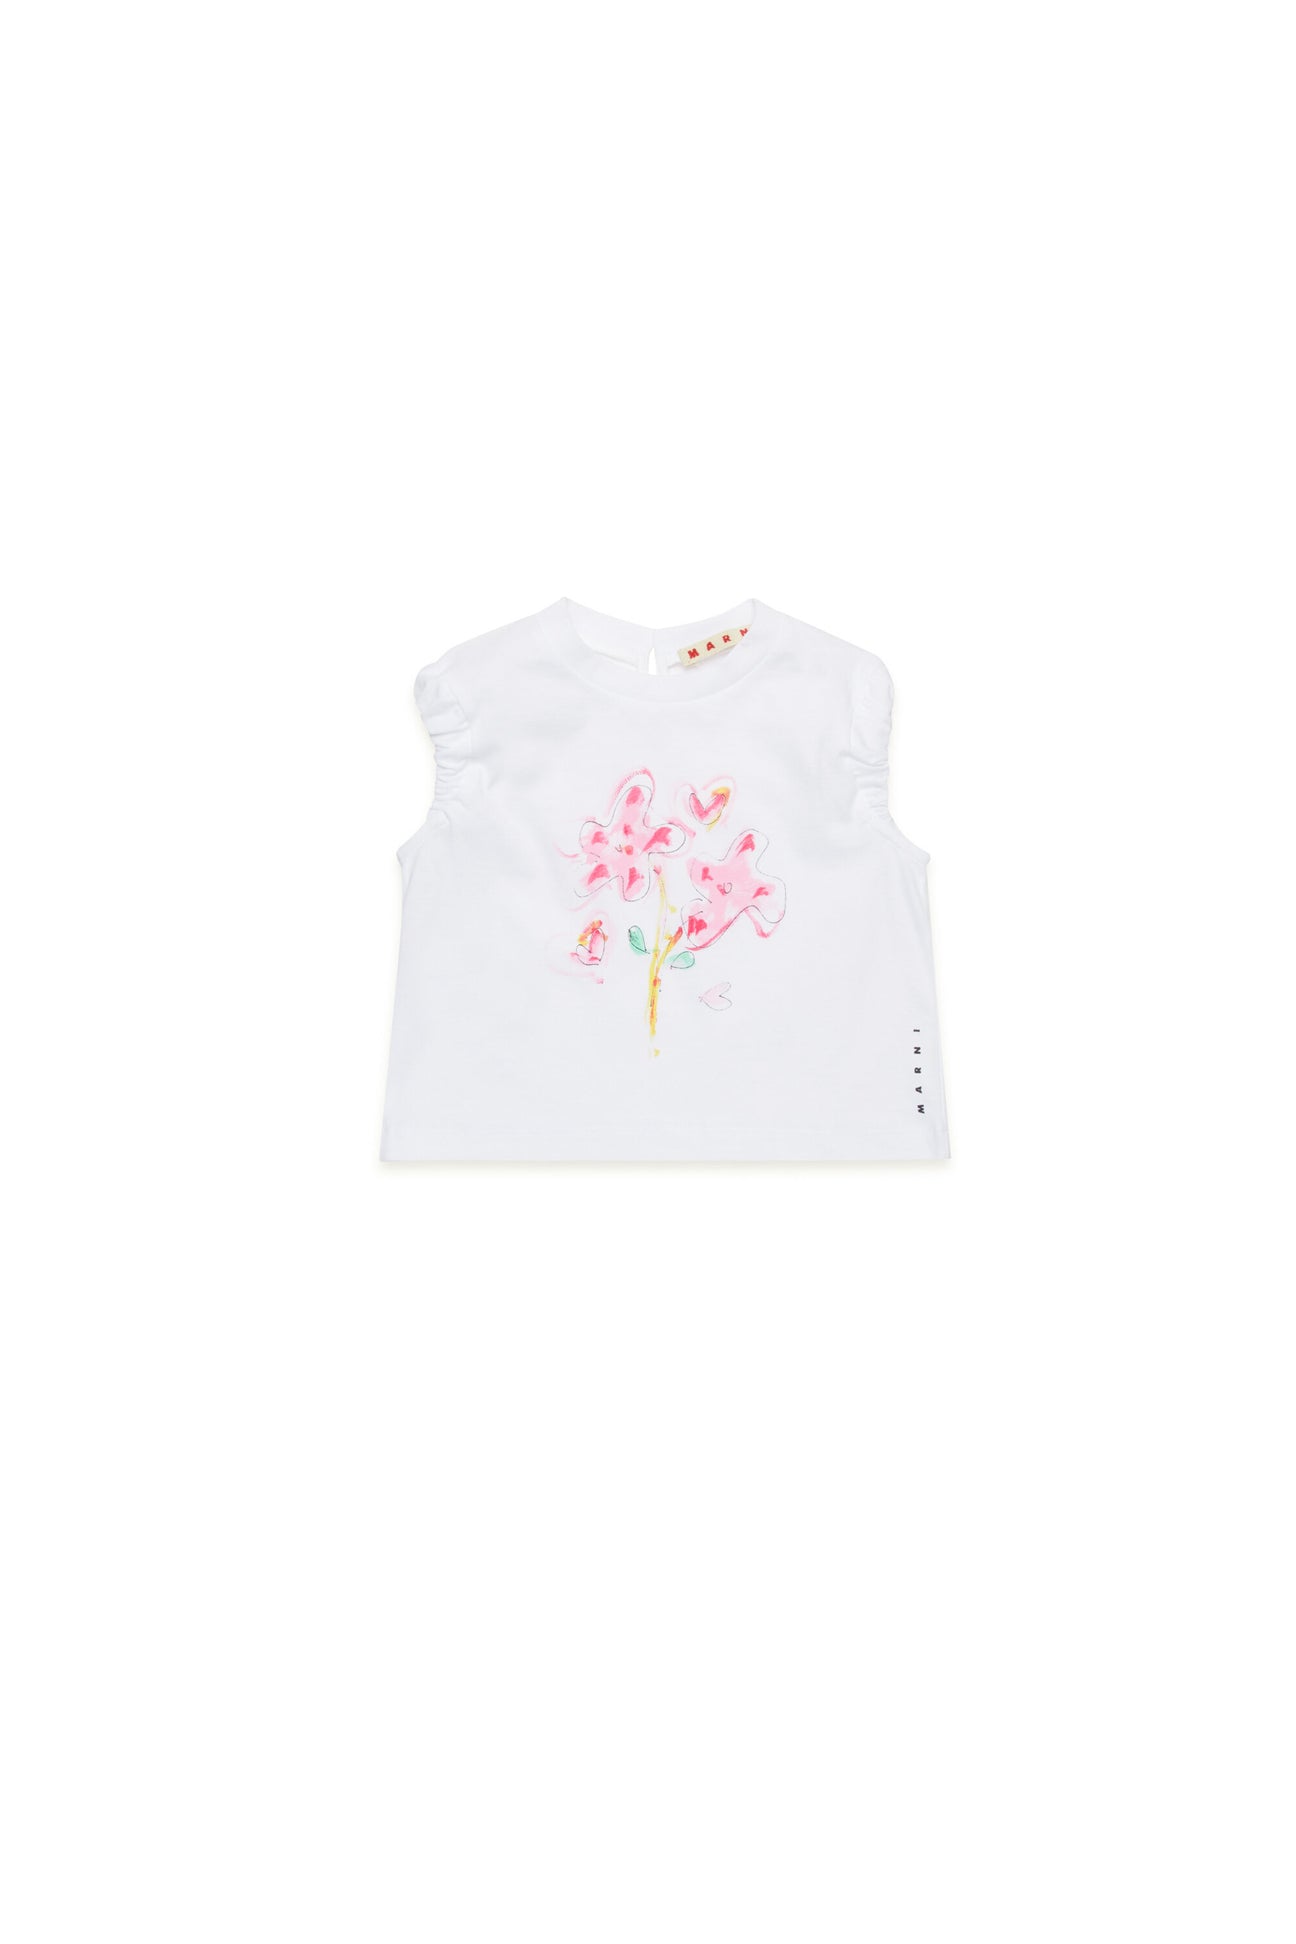 Camiseta con gráficos Flores rosas 